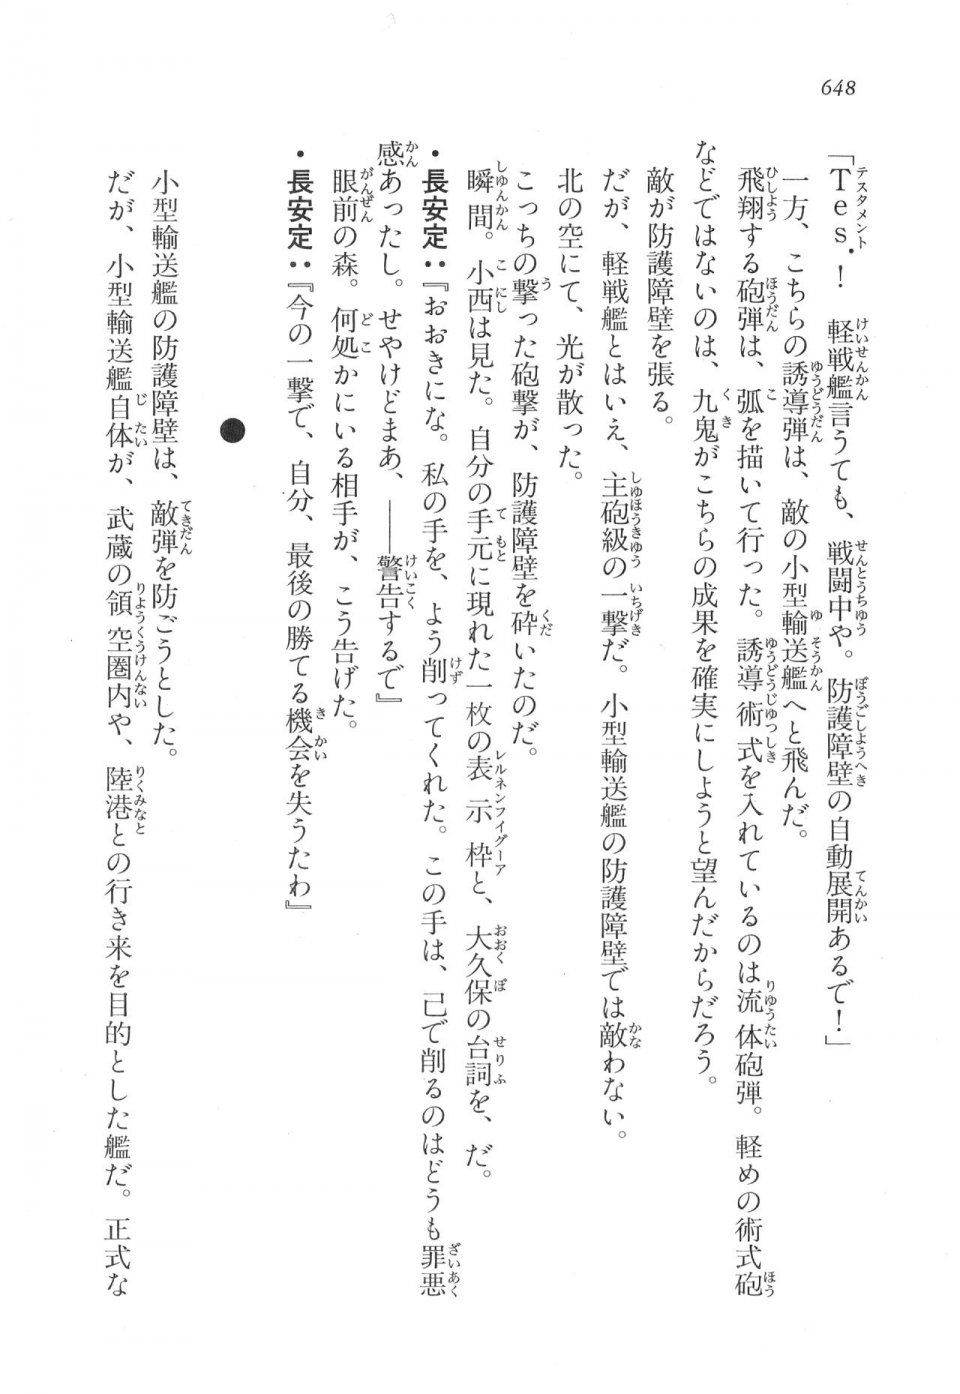 Kyoukai Senjou no Horizon LN Vol 17(7B) - Photo #650